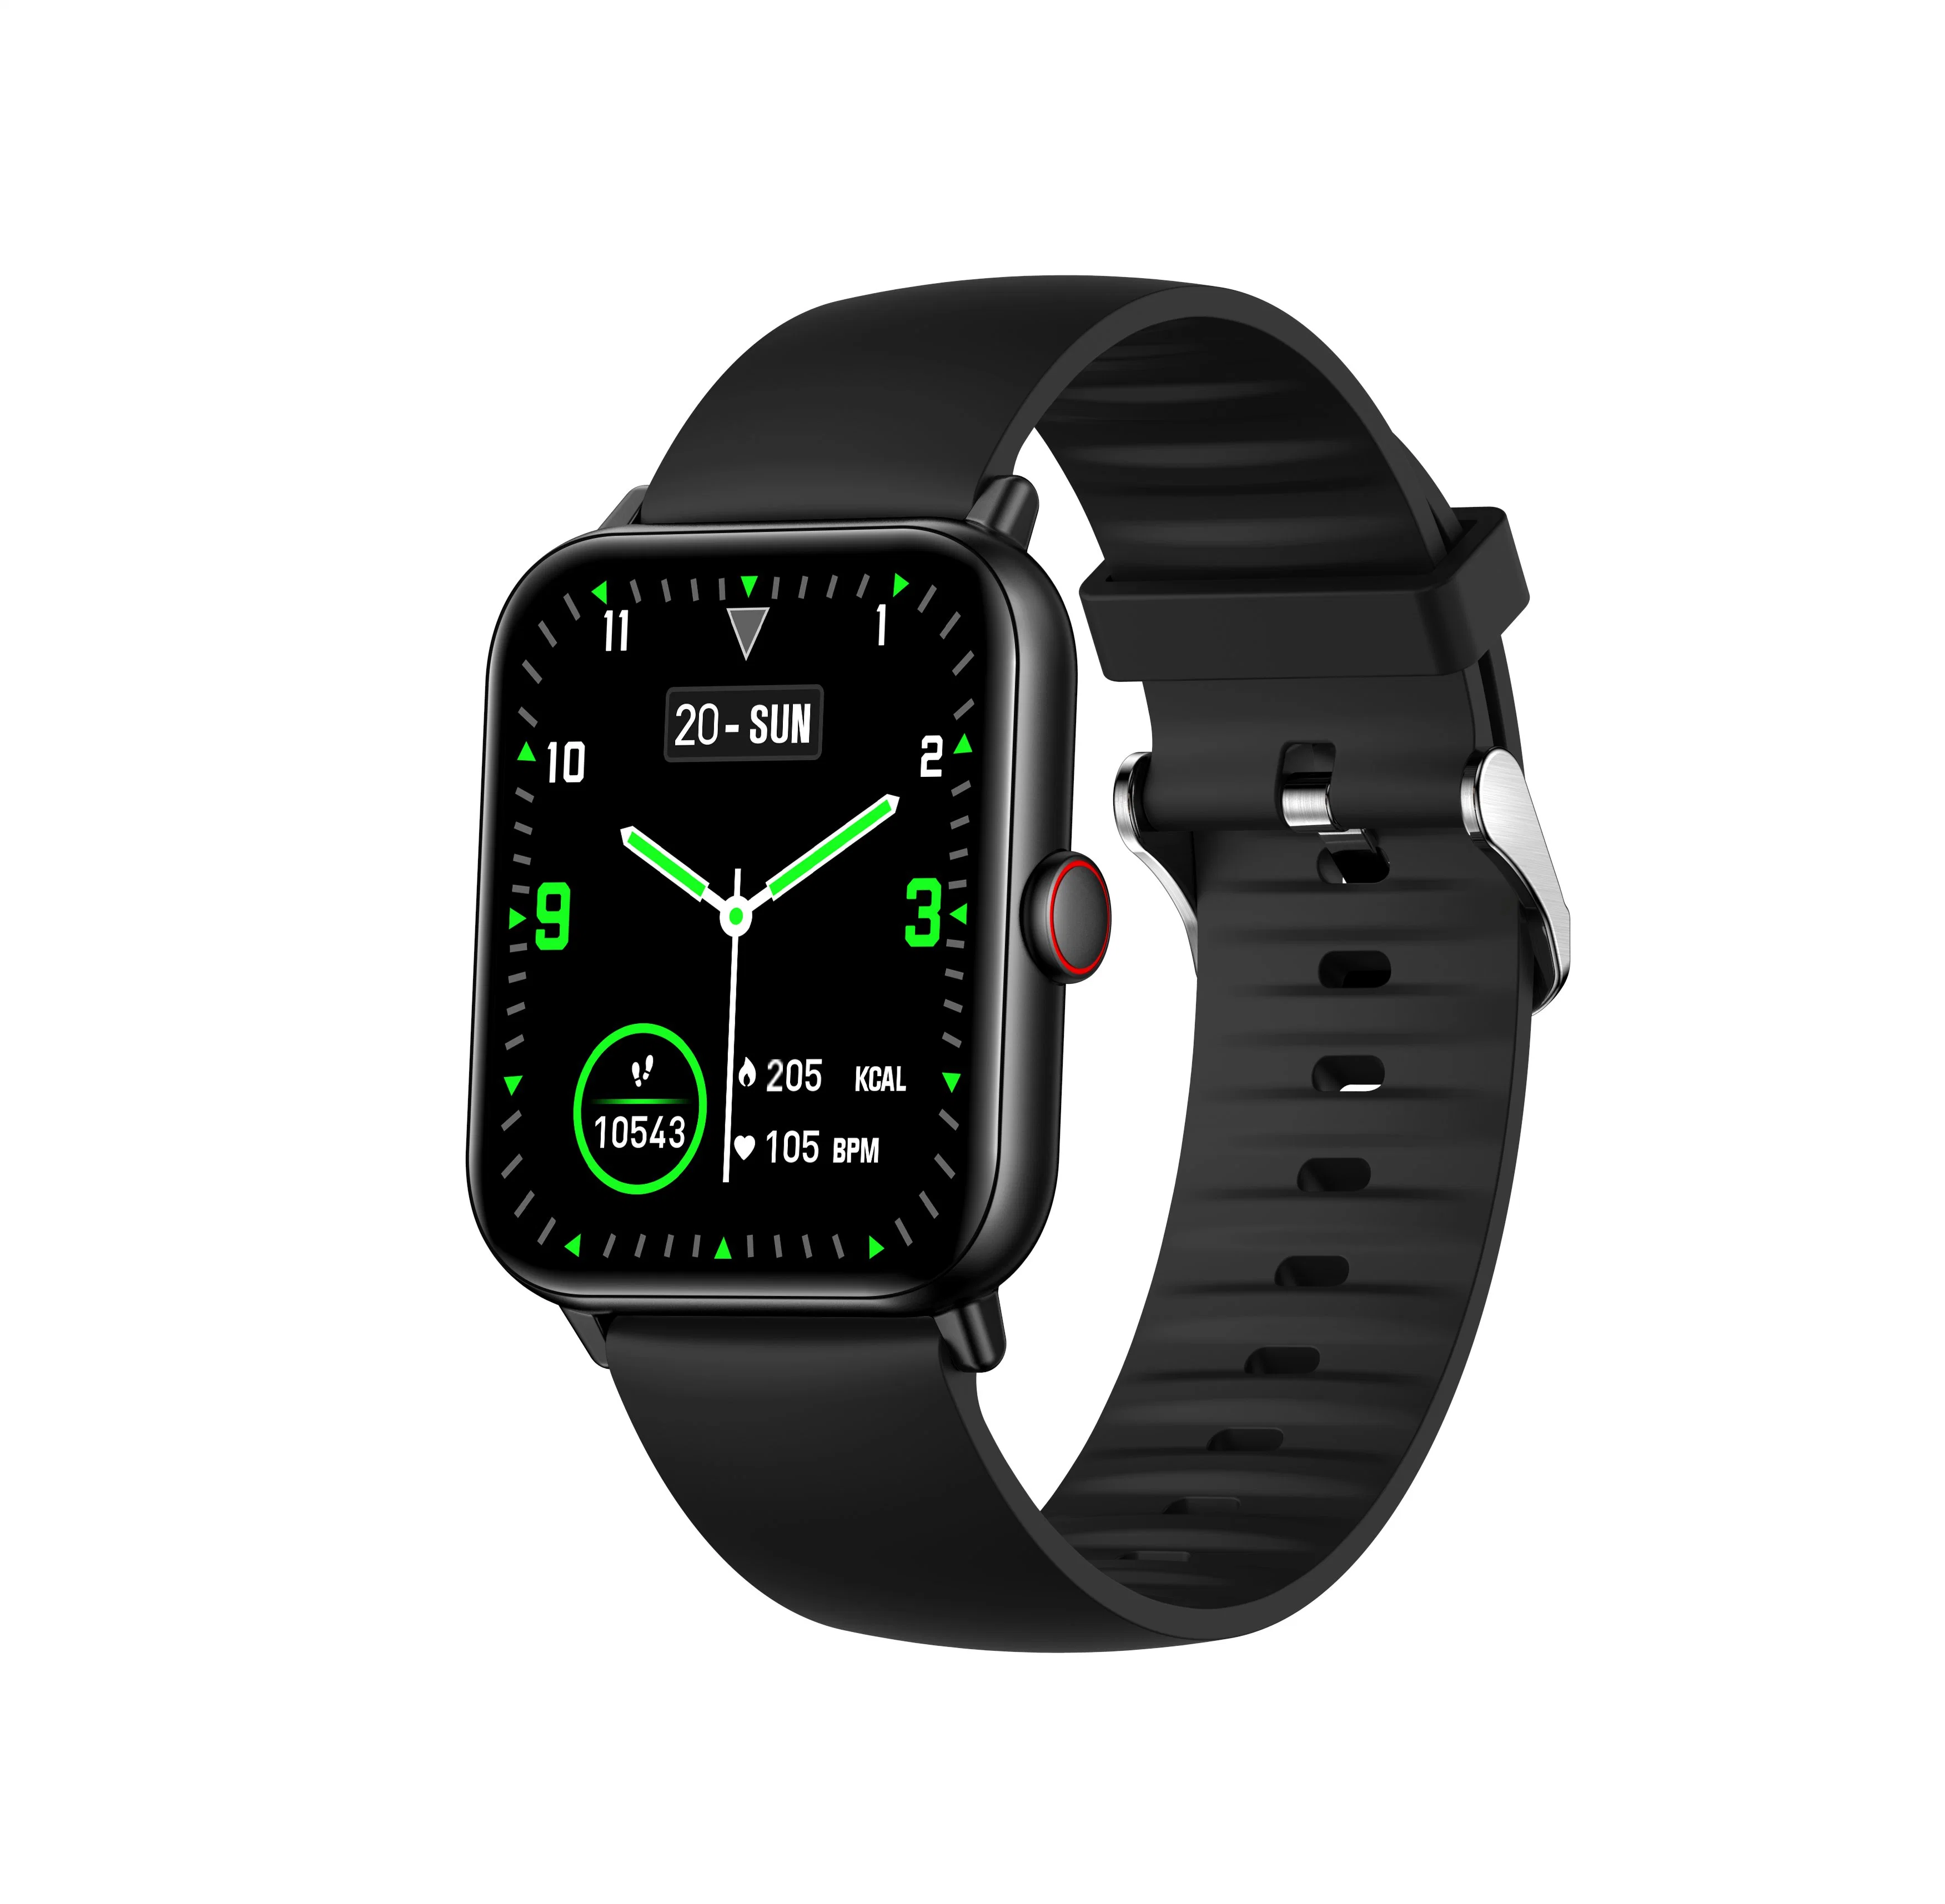 Smartwatch 8 Seires 8 Smartwatch Support Bluetooth-Wählverfahren Kabelloses Laden NFC Split Display kompatibel iOS und Android Smartphones